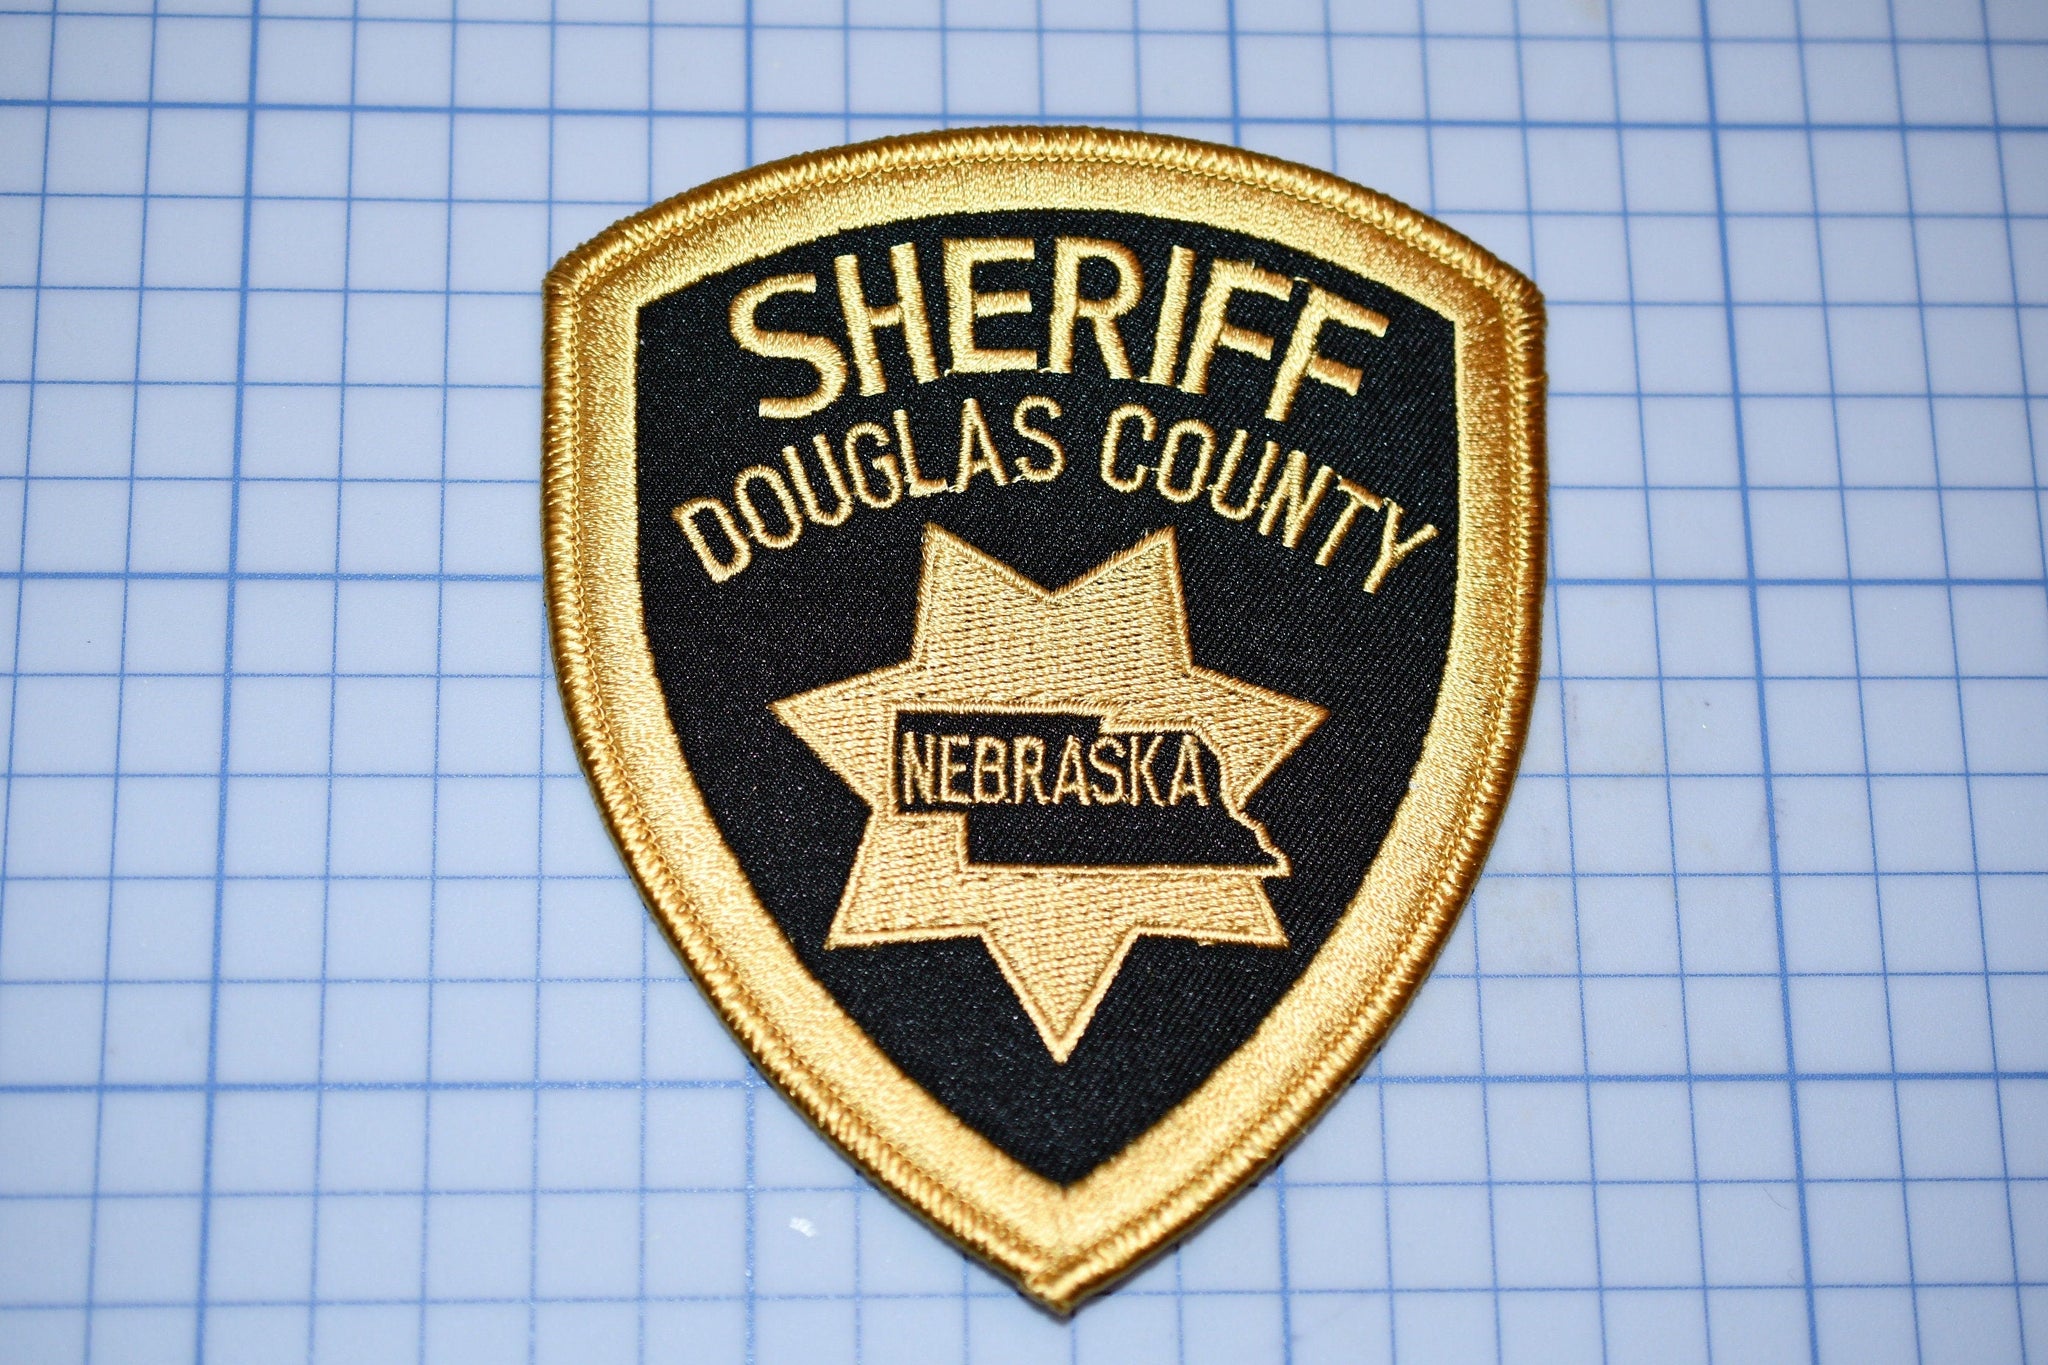 Douglas County Nebraska Sheriff Patch (S4-288)